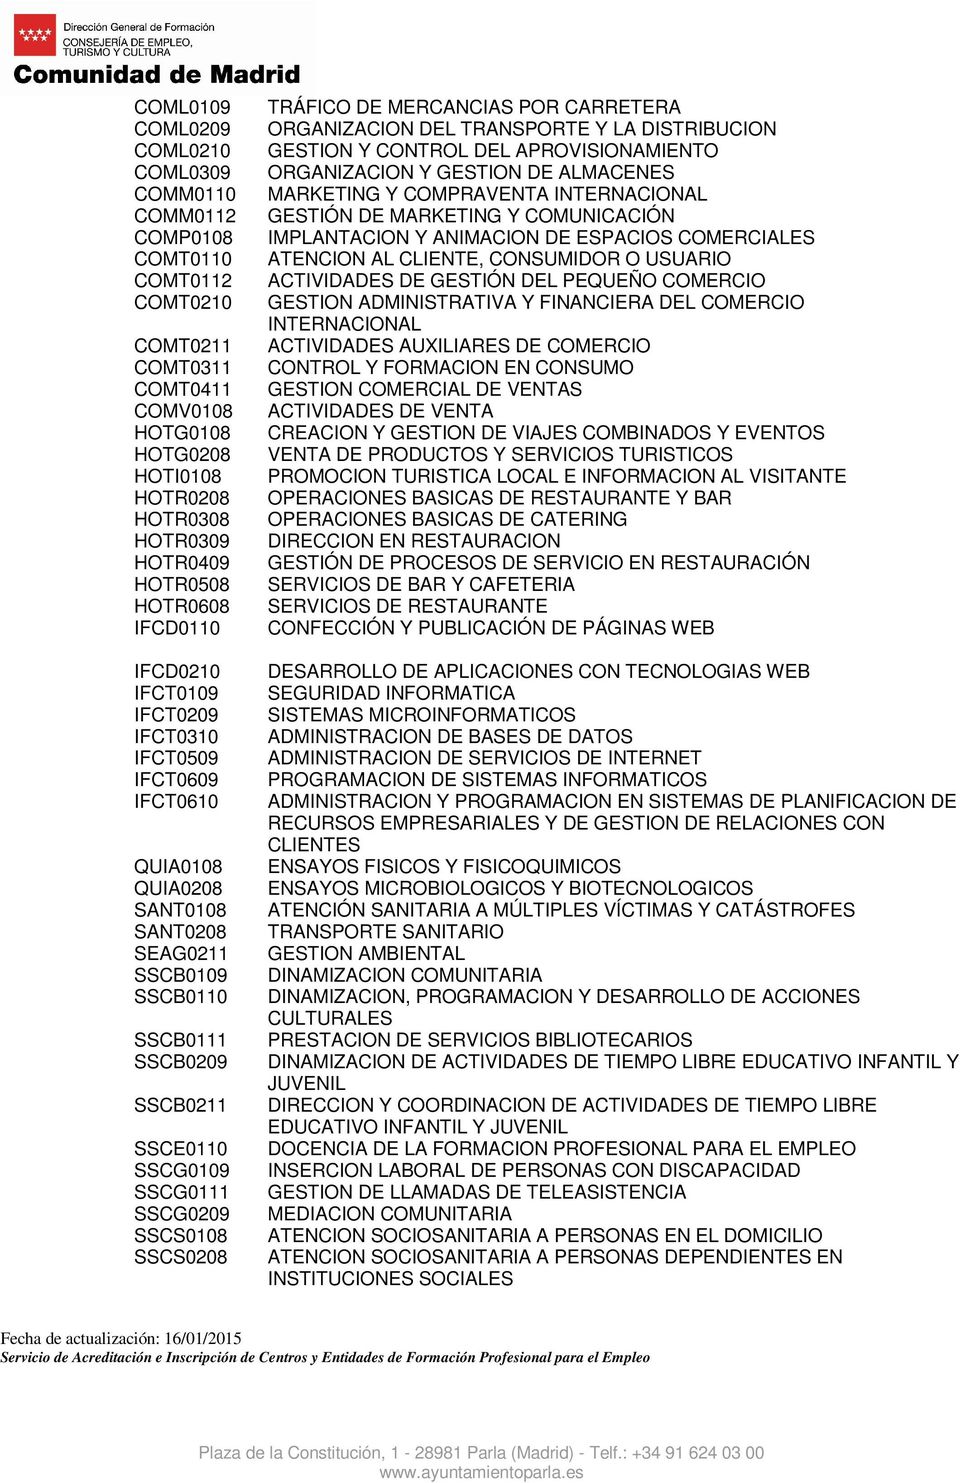 SSCG0209 SSCS0108 SSCS0208 TRÁFICO DE MERCANCIAS POR CARRETERA ORGANIZACION DEL TRANSPORTE Y LA DISTRIBUCION GESTION Y CONTROL DEL APROVISIONAMIENTO ORGANIZACION Y GESTION DE ALMACENES MARKETING Y